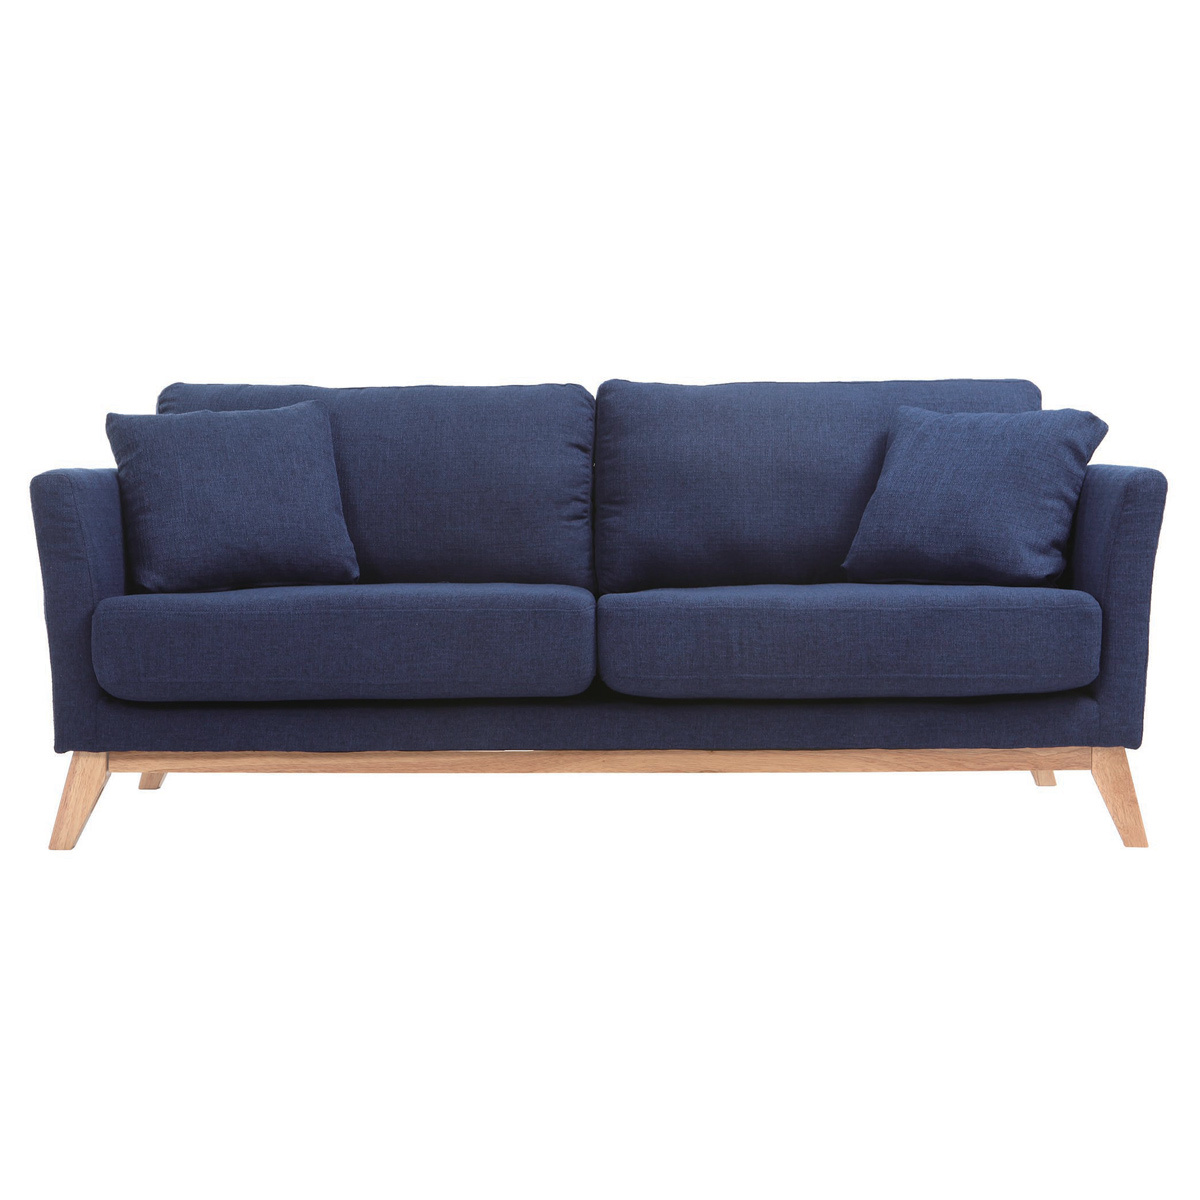 Canapé scandinave déhoussable 3 places en tissu bleu foncé et bois clair OSLO vue1